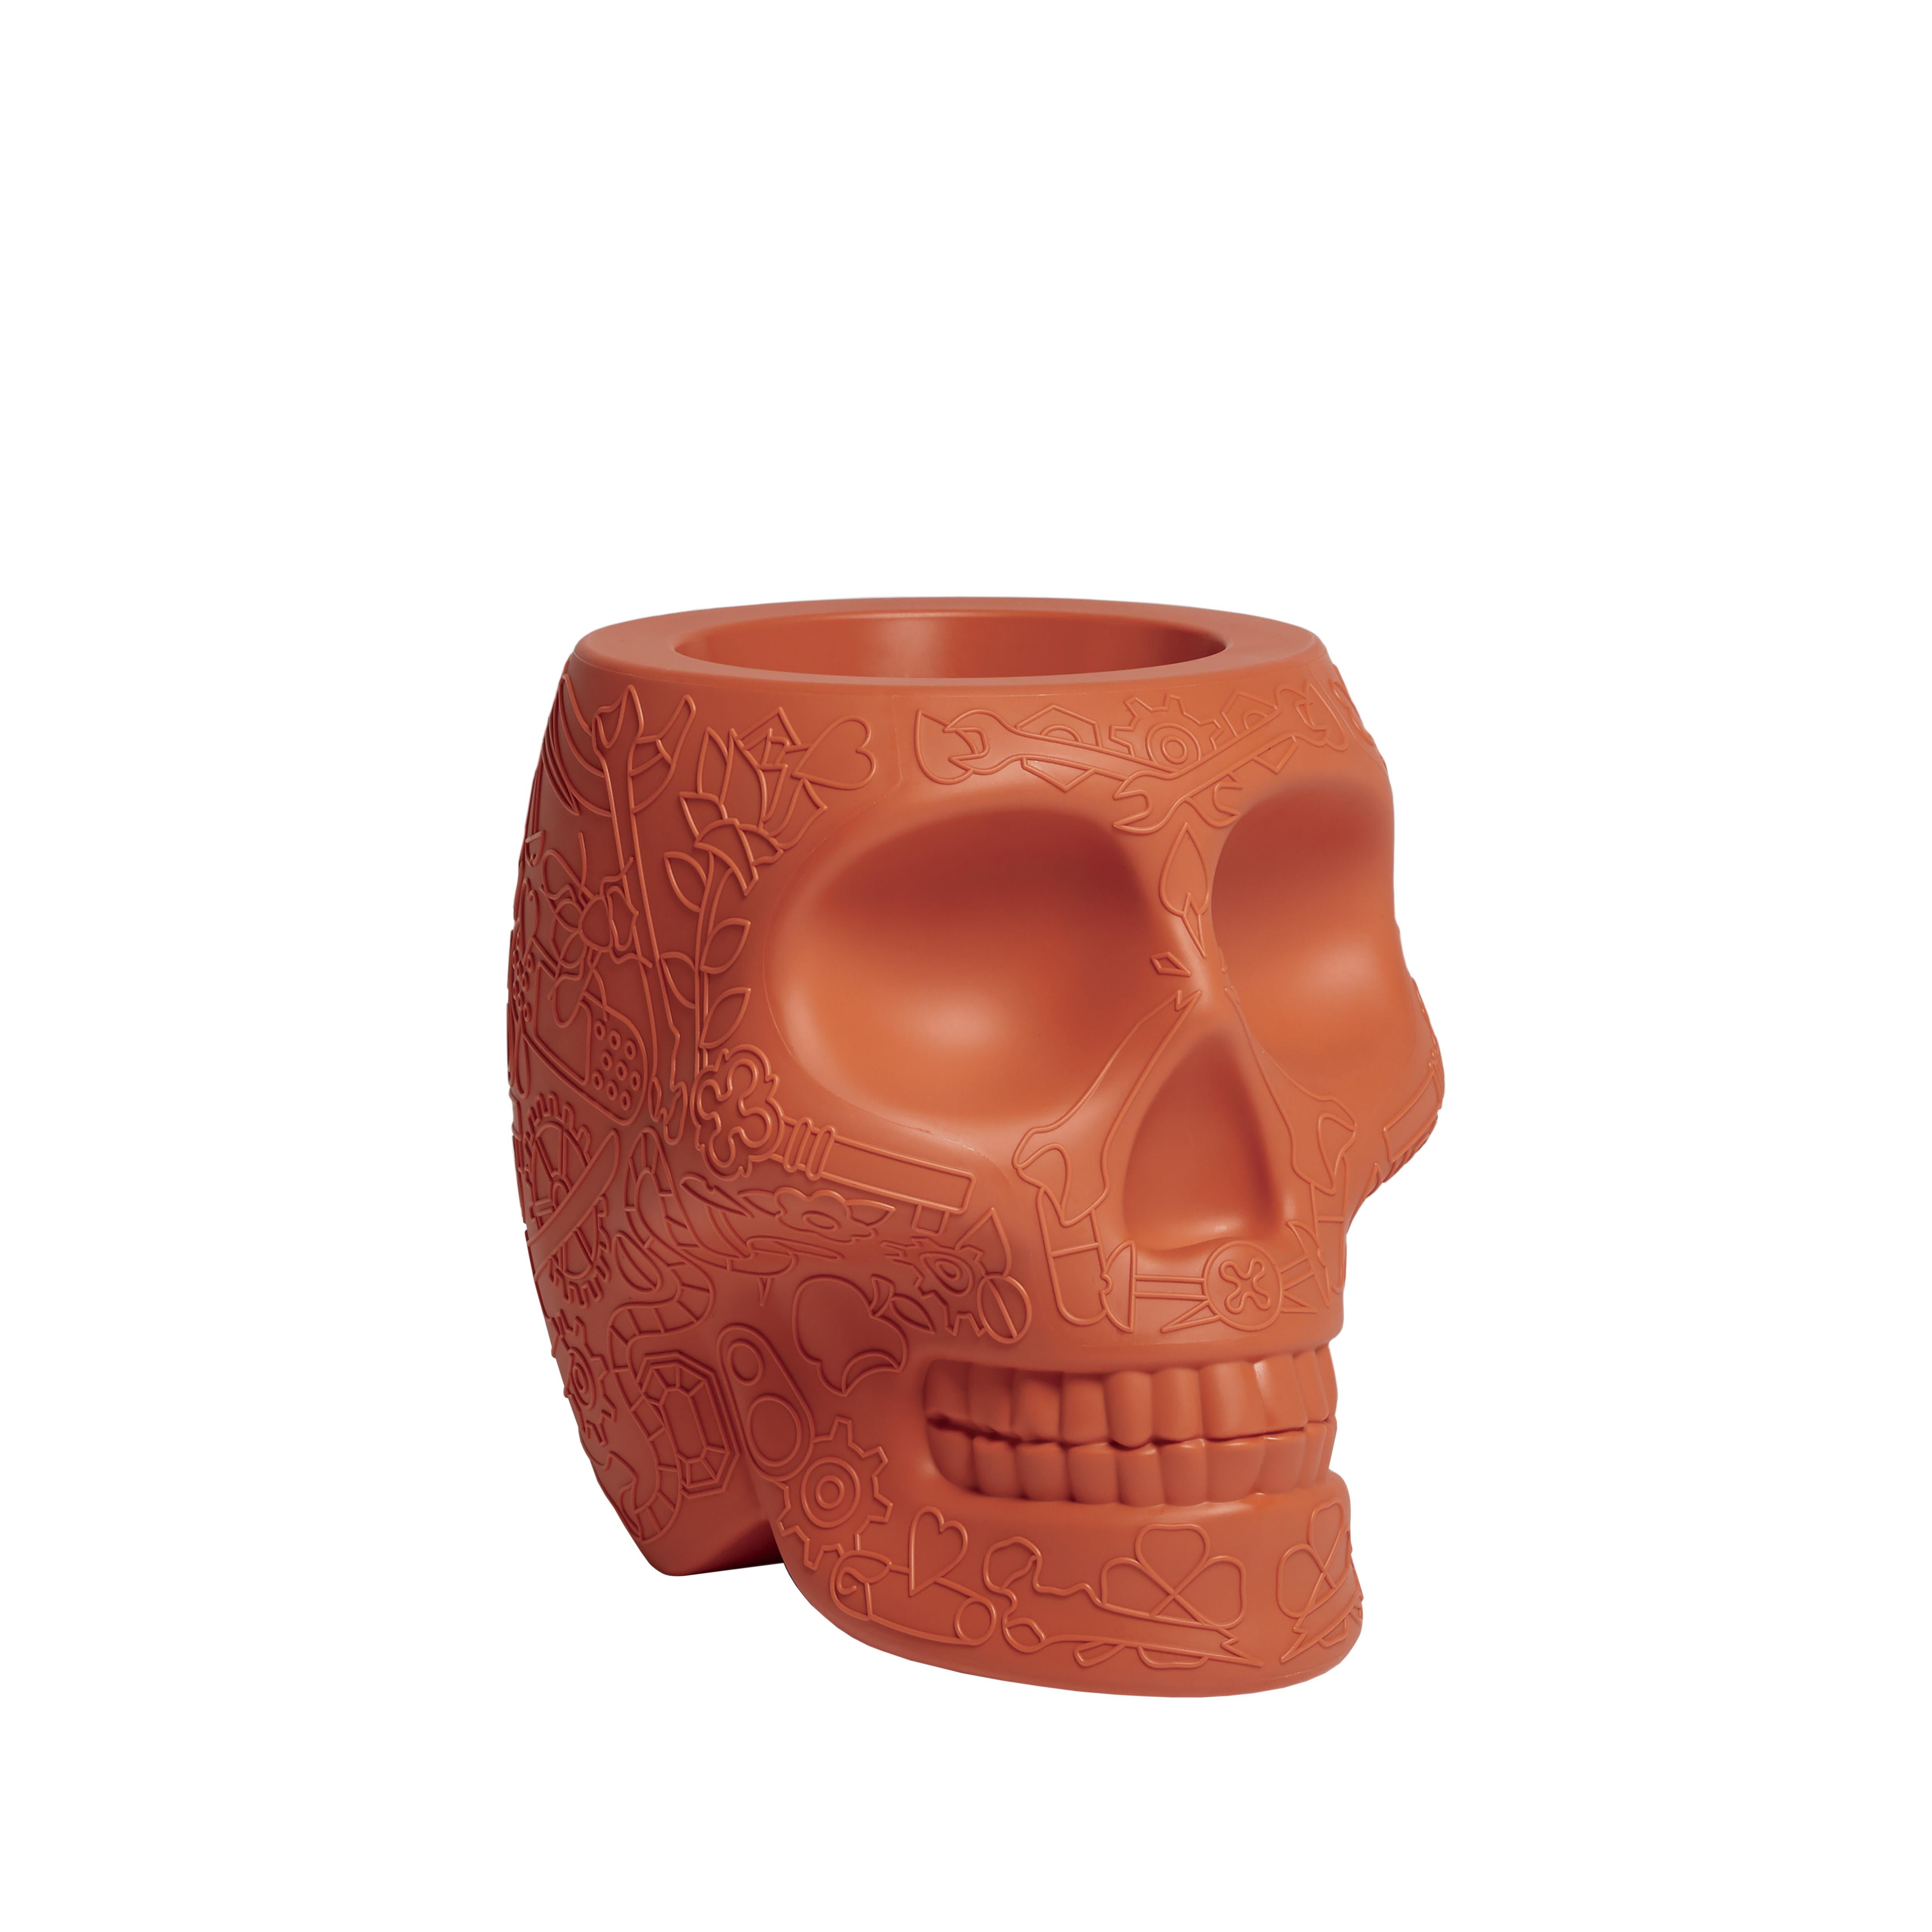 For Sale: Orange (Terracotta) Modern Skull Terracotta Plastic Planter or Champagne Cooler by Studio Job 2